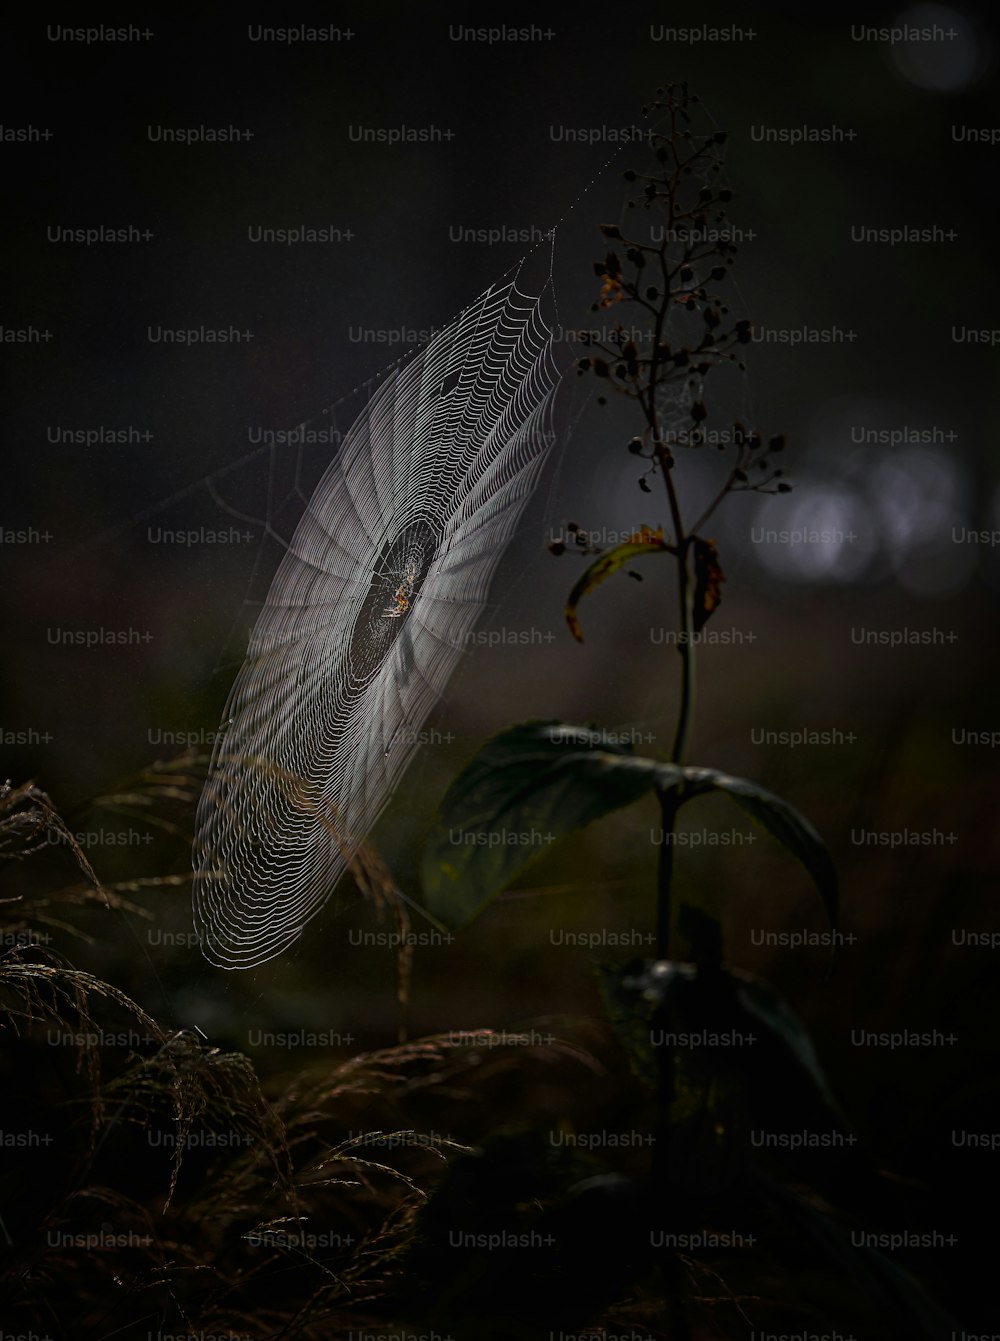 Ein Spinnennetz an einer Pflanze im Dunkeln